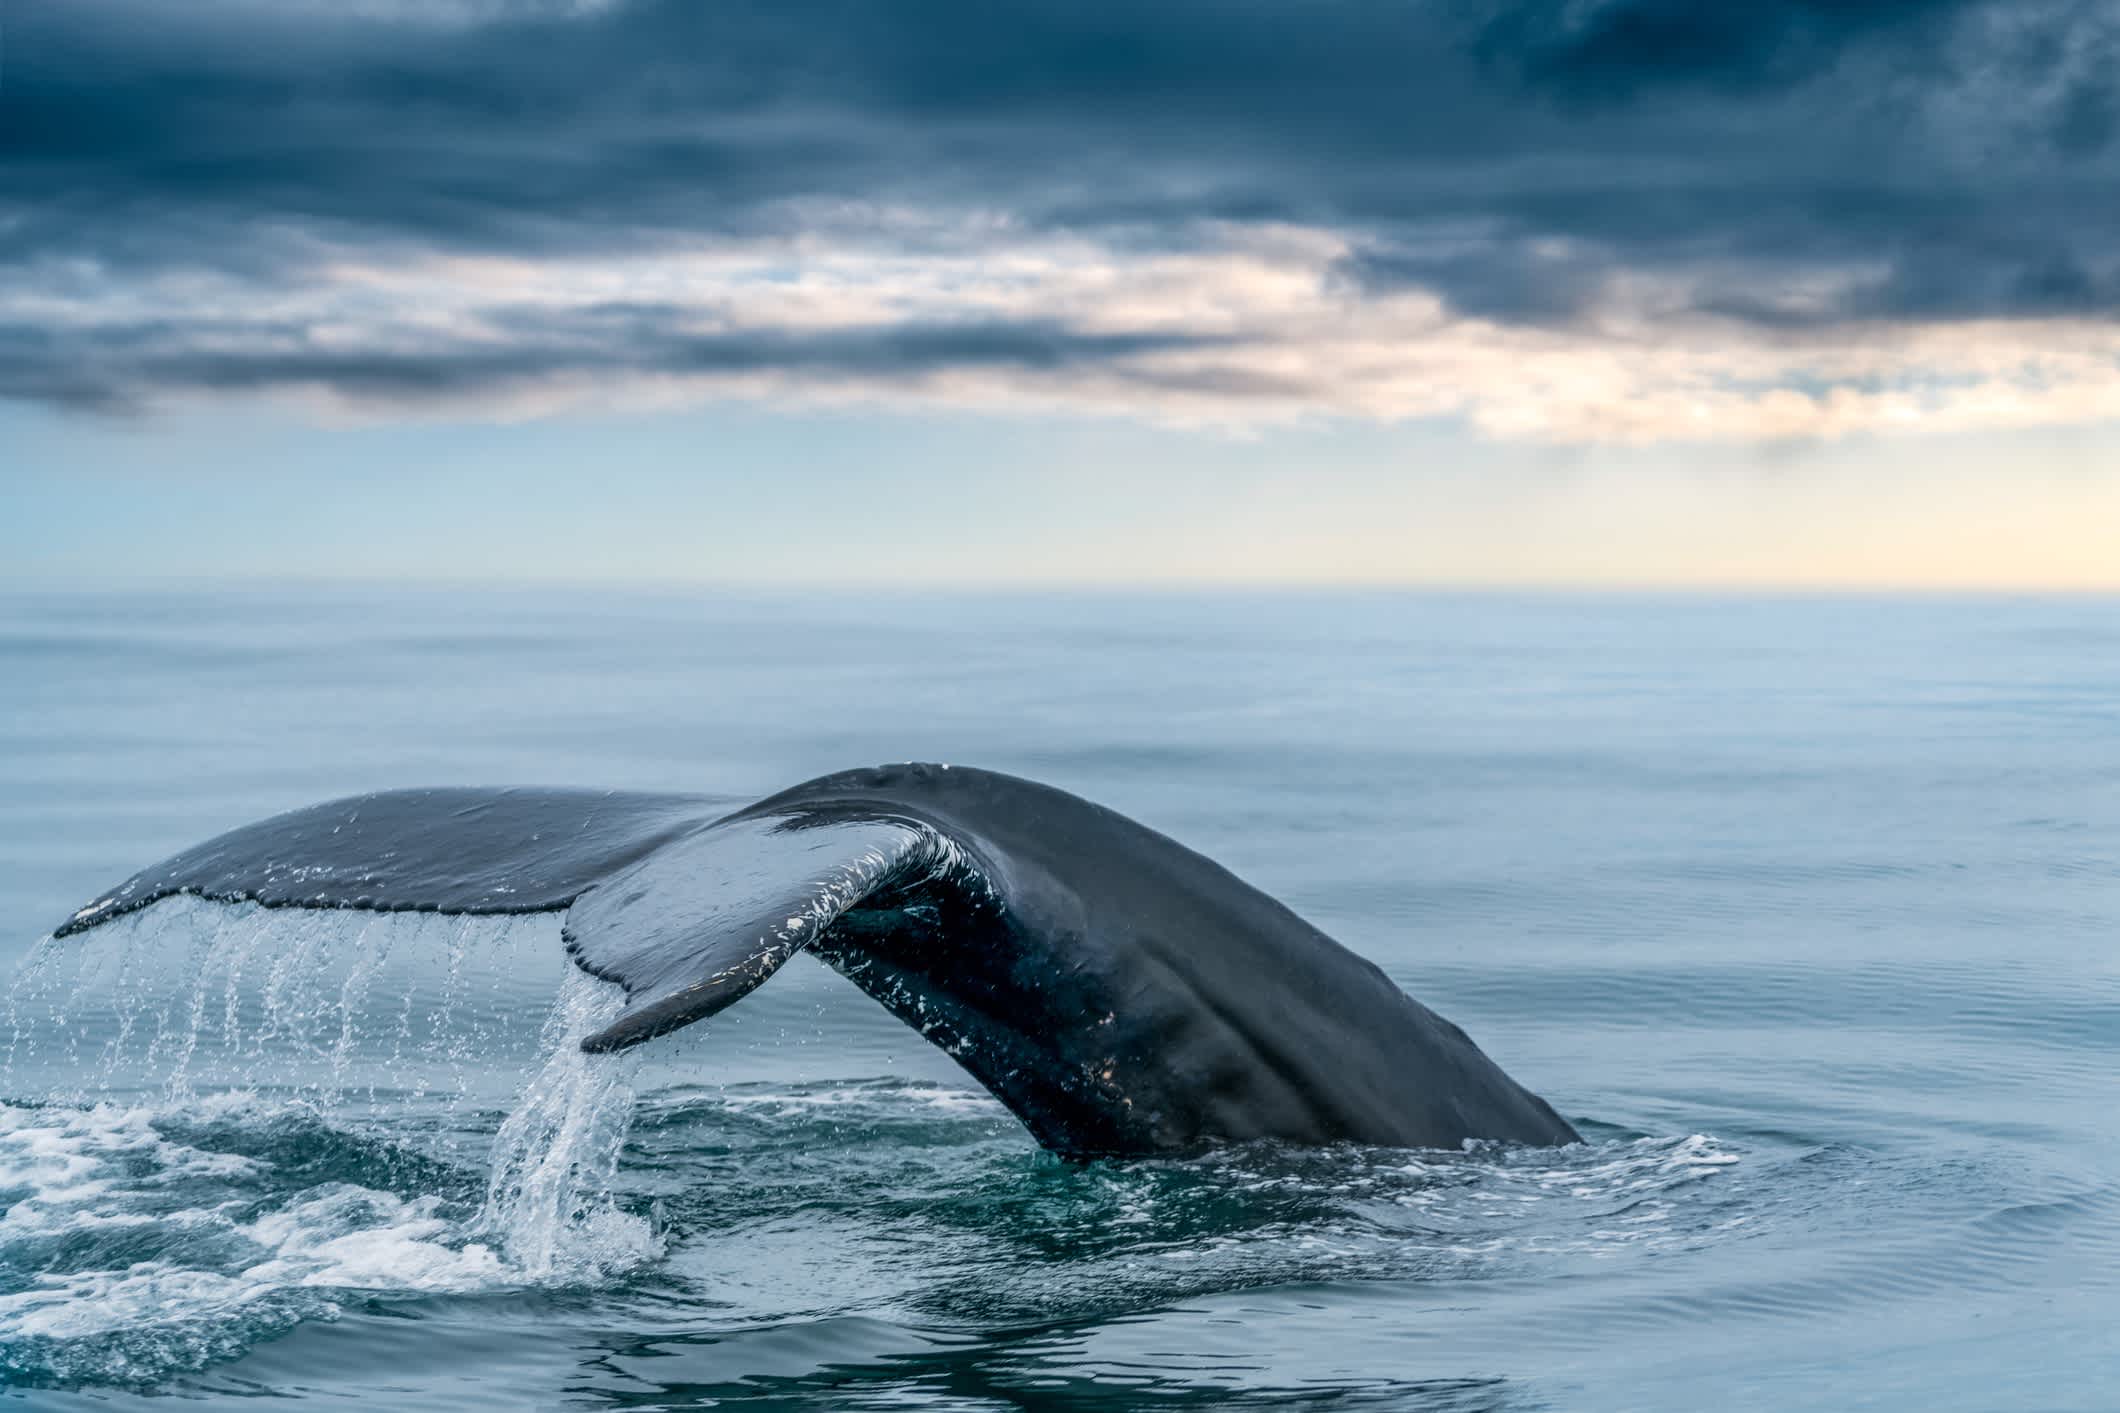 Schwanz eines Buckelwals im Meer der nördlichen Hemisphäre.